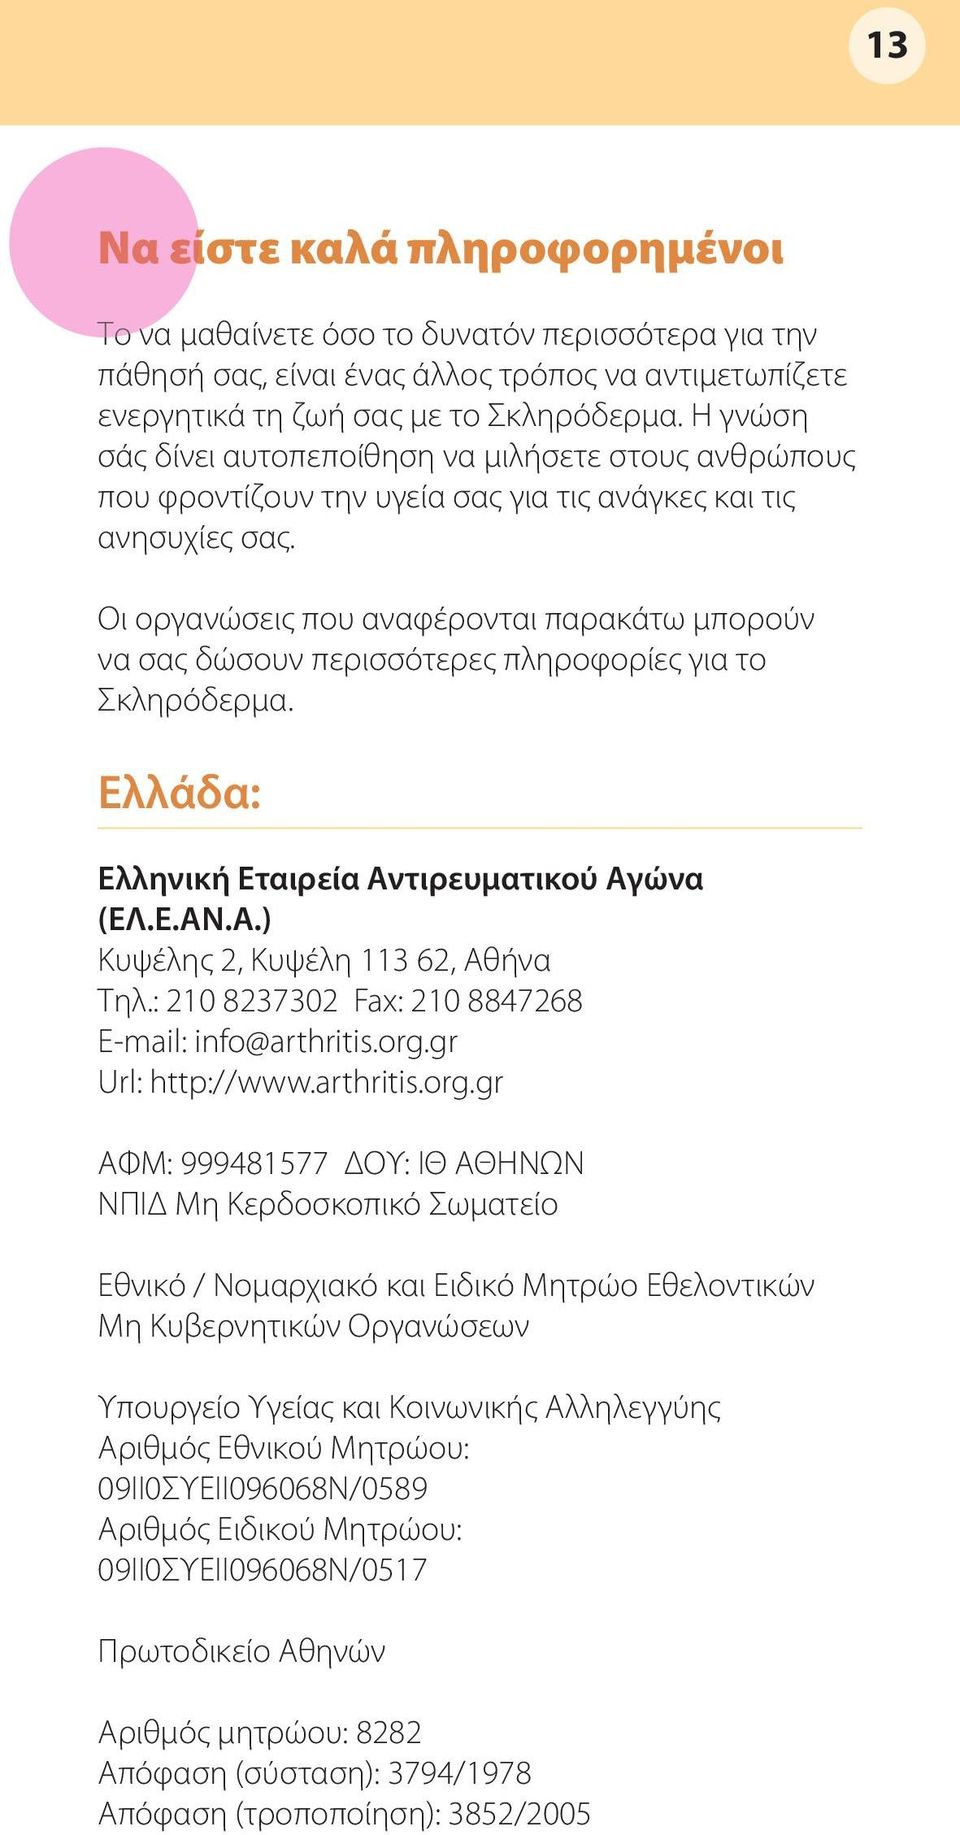 Οι οργανώσεις που αναφέρονται παρακάτω μπορούν να σας δώσουν περισσότερες πληροφορίες για το Σκληρόδερμα. Ελλάδα: Ελληνική Εταιρεία Αντιρευματικού Αγώνα (ΕΛ.Ε.ΑΝ.Α.) Κυψέλης 2, Κυψέλη 113 62, Αθήνα Τηλ.